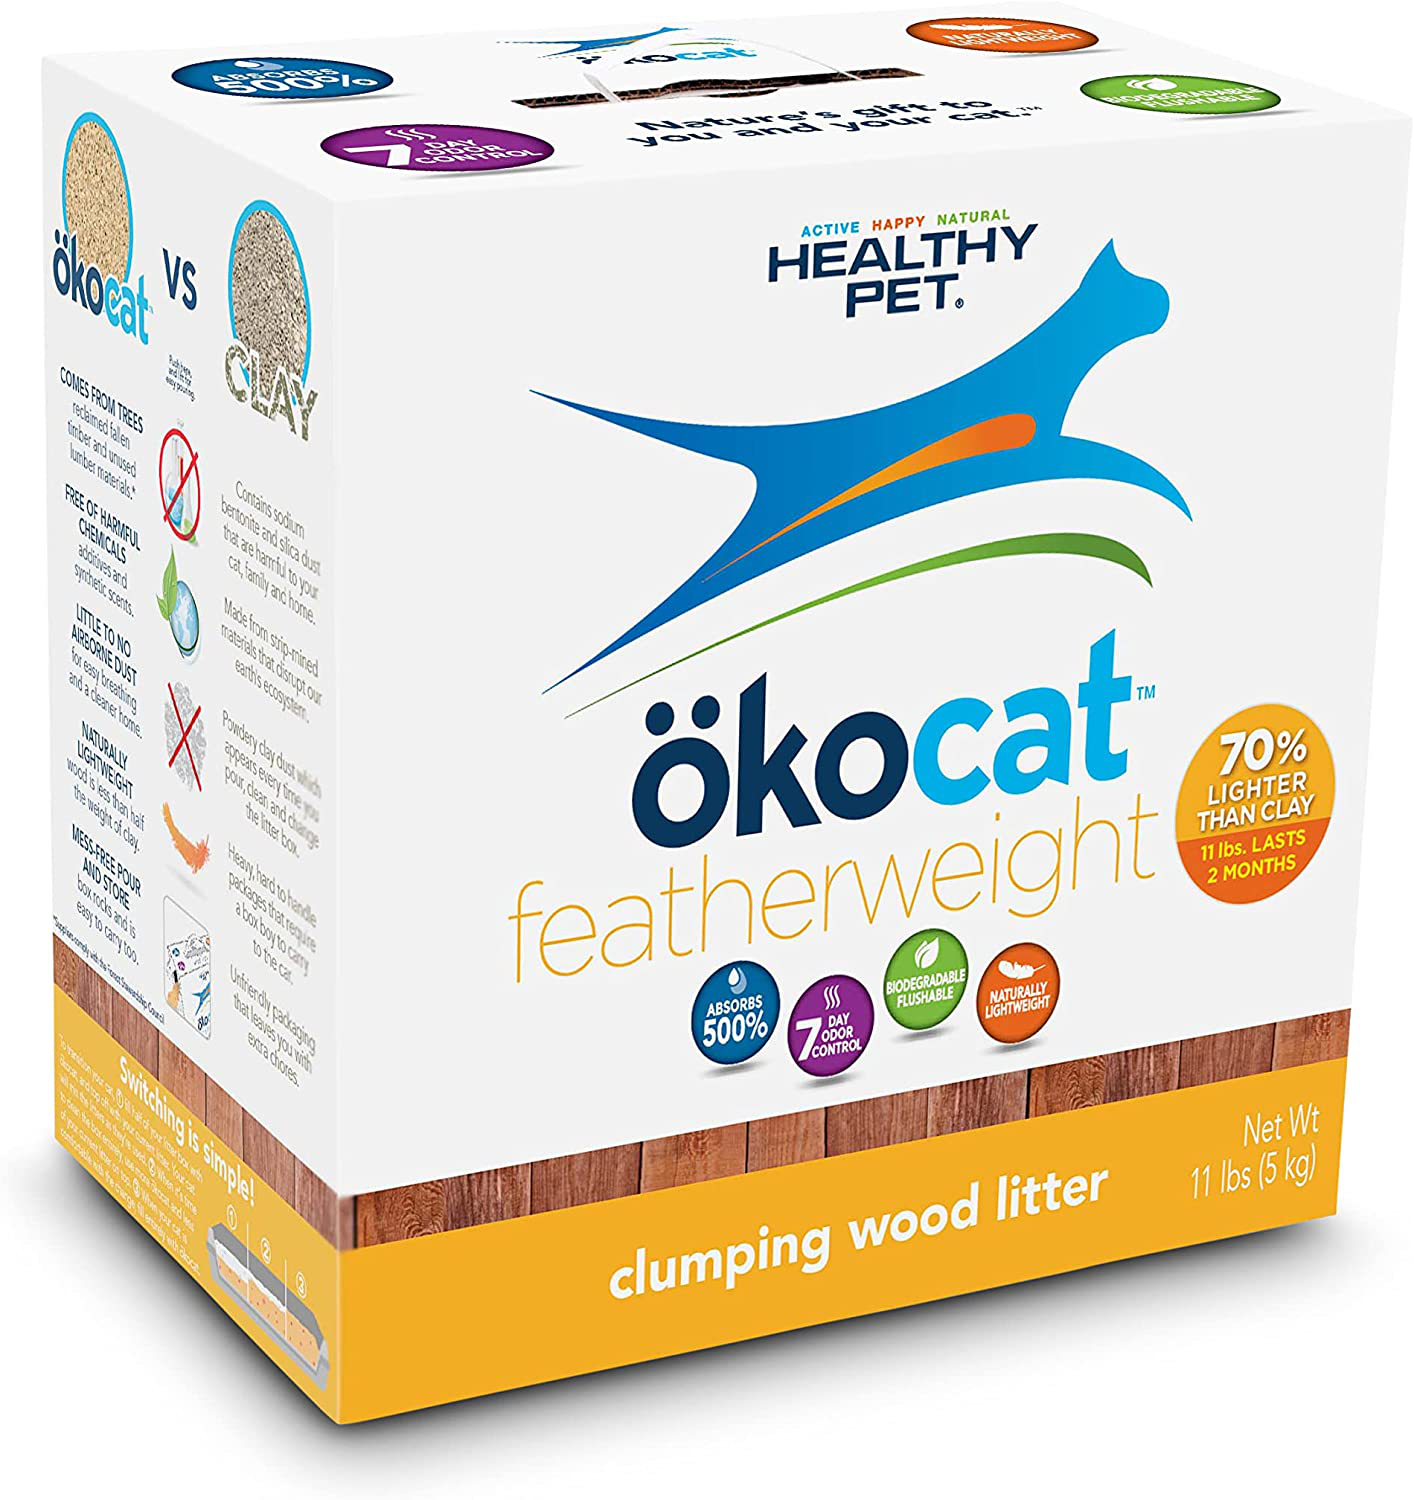 Okocat Unscented Featherwieght Clumping Wood Cat Litter Animals & Pet Supplies > Pet Supplies > Cat Supplies > Cat Litter okocat 11 LBS  